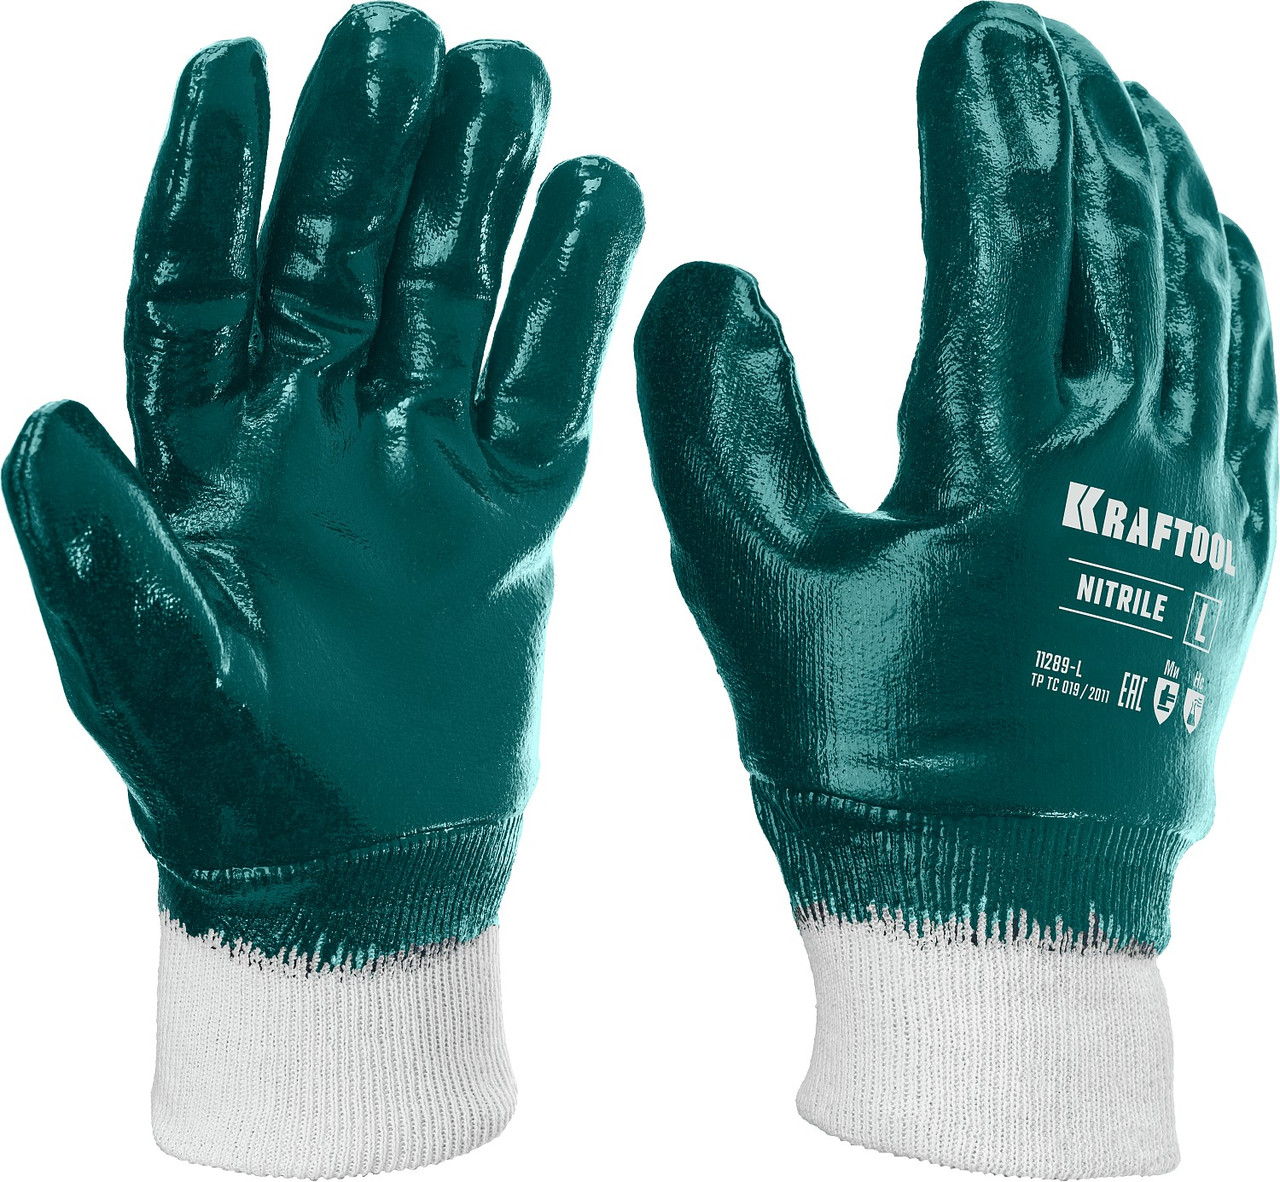 KRAFTOOL L, с нитриловым покрытием перчатки износостойкие, с манжетой, защита от нефтепродуктов 11289-L